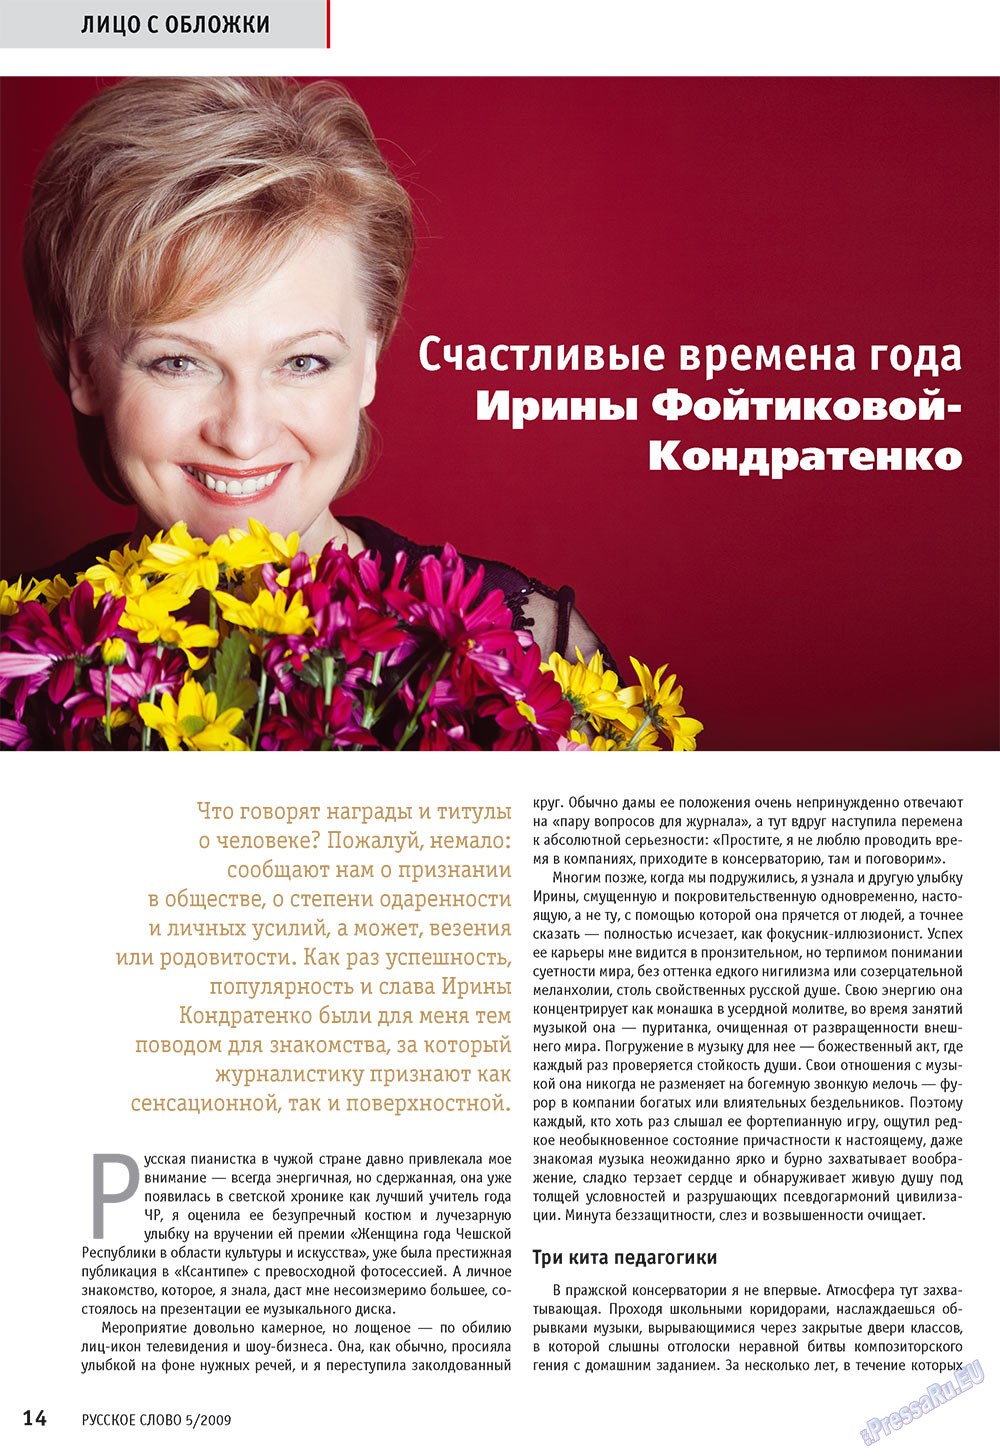 Русское слово, журнал. 2009 №5 стр.16